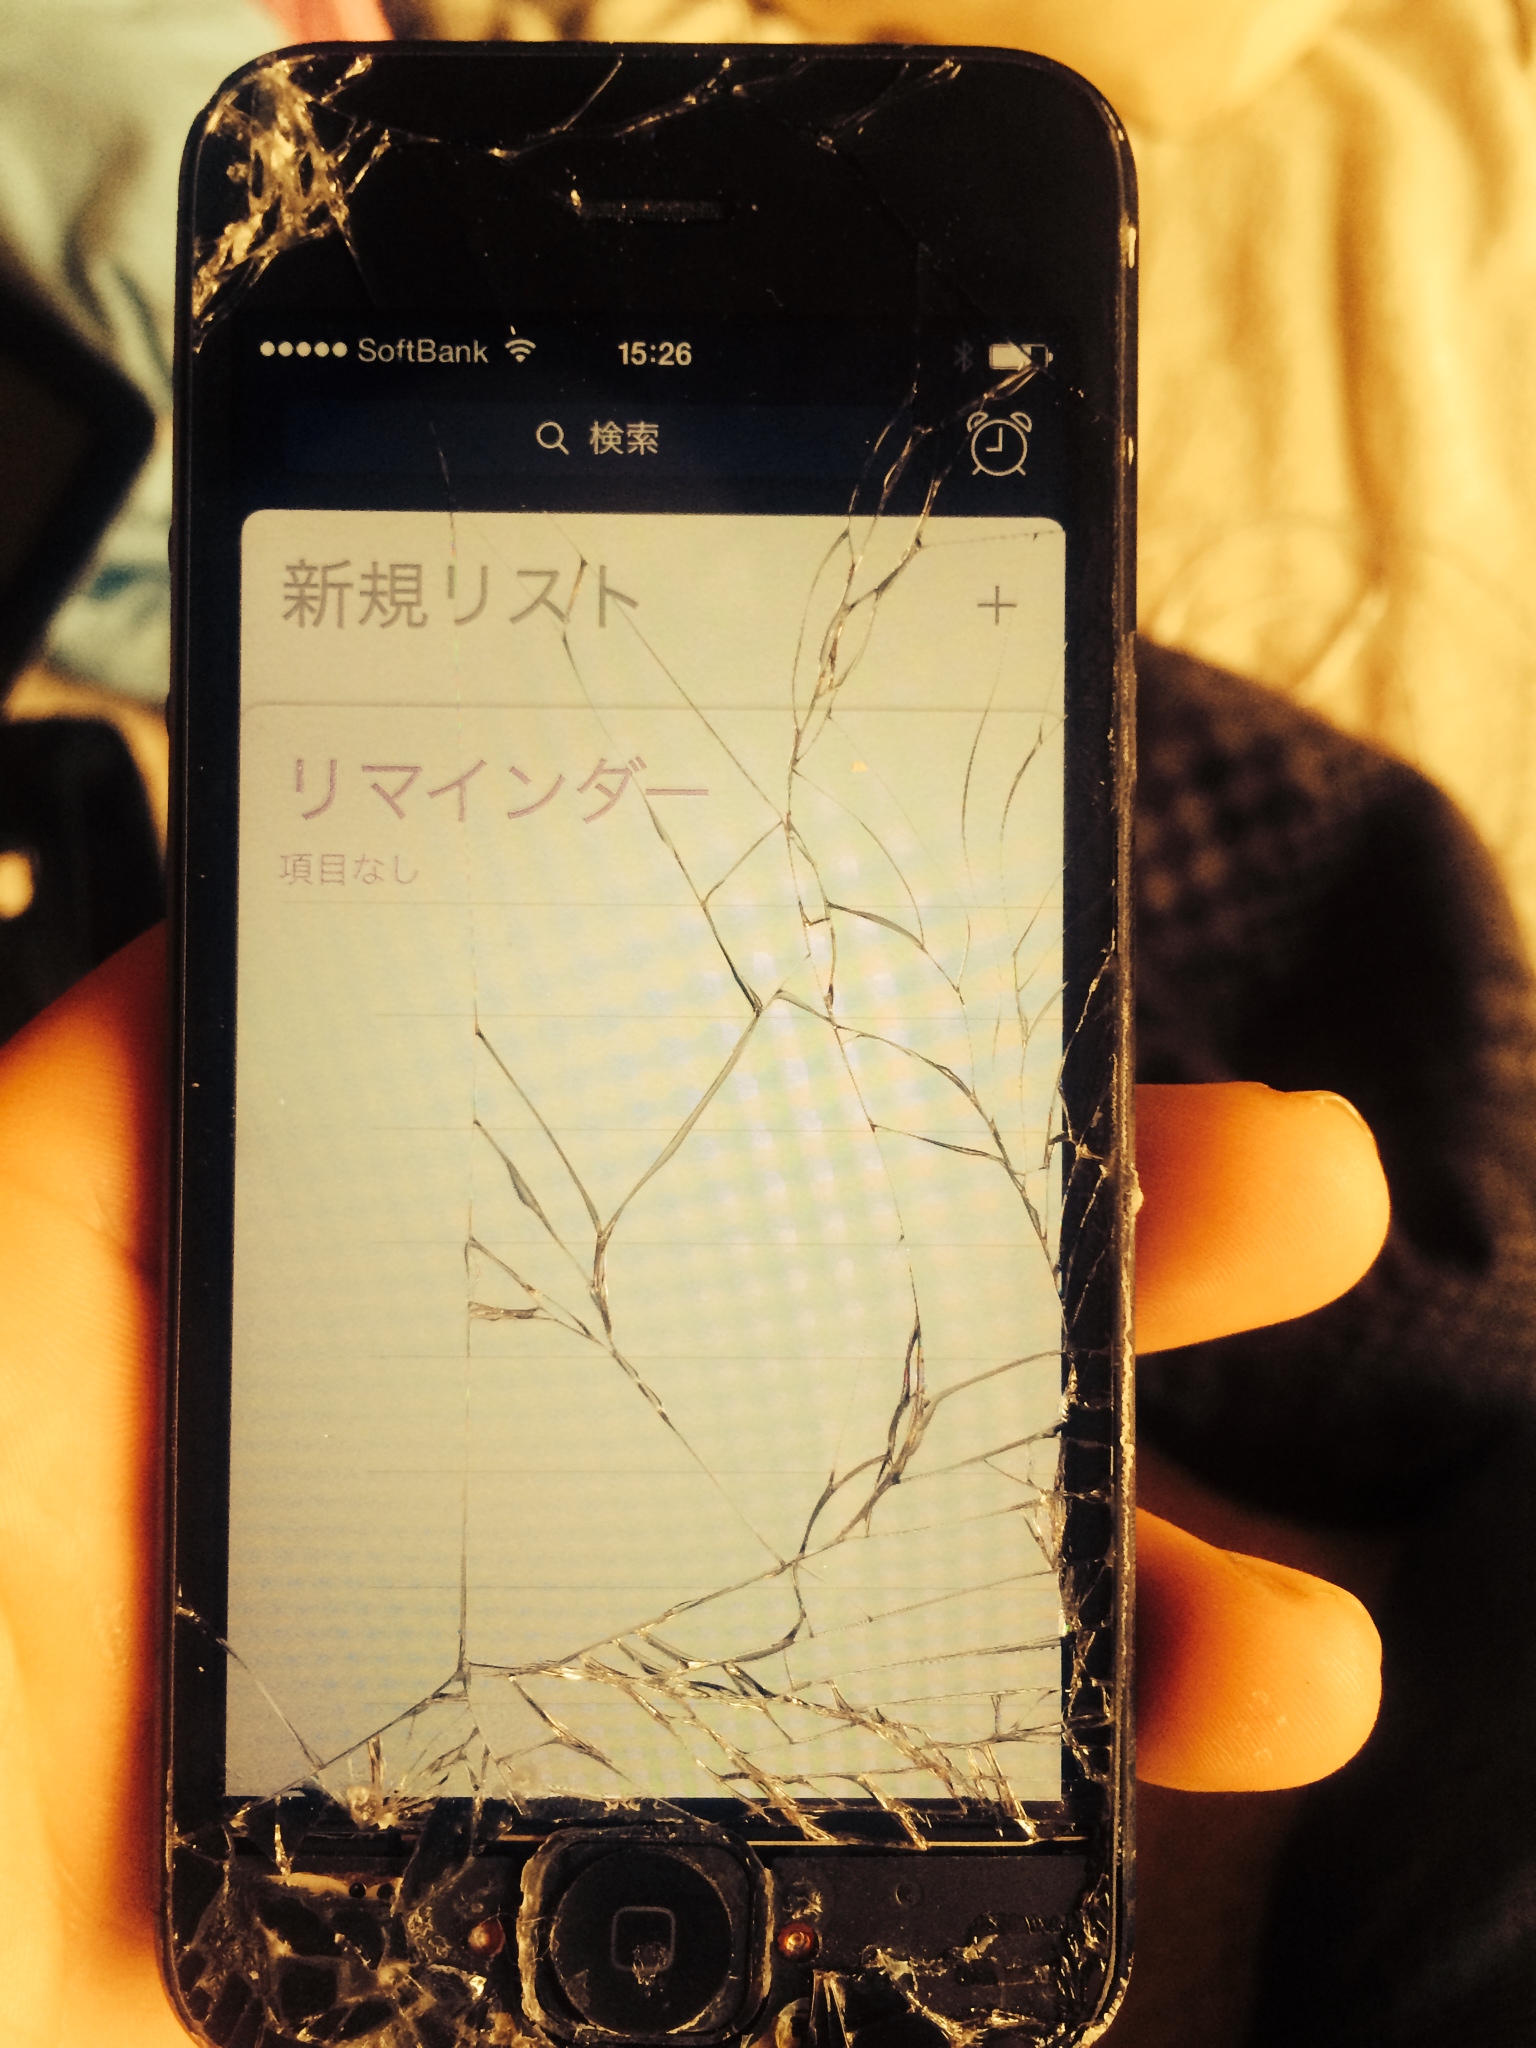 iphone-broken